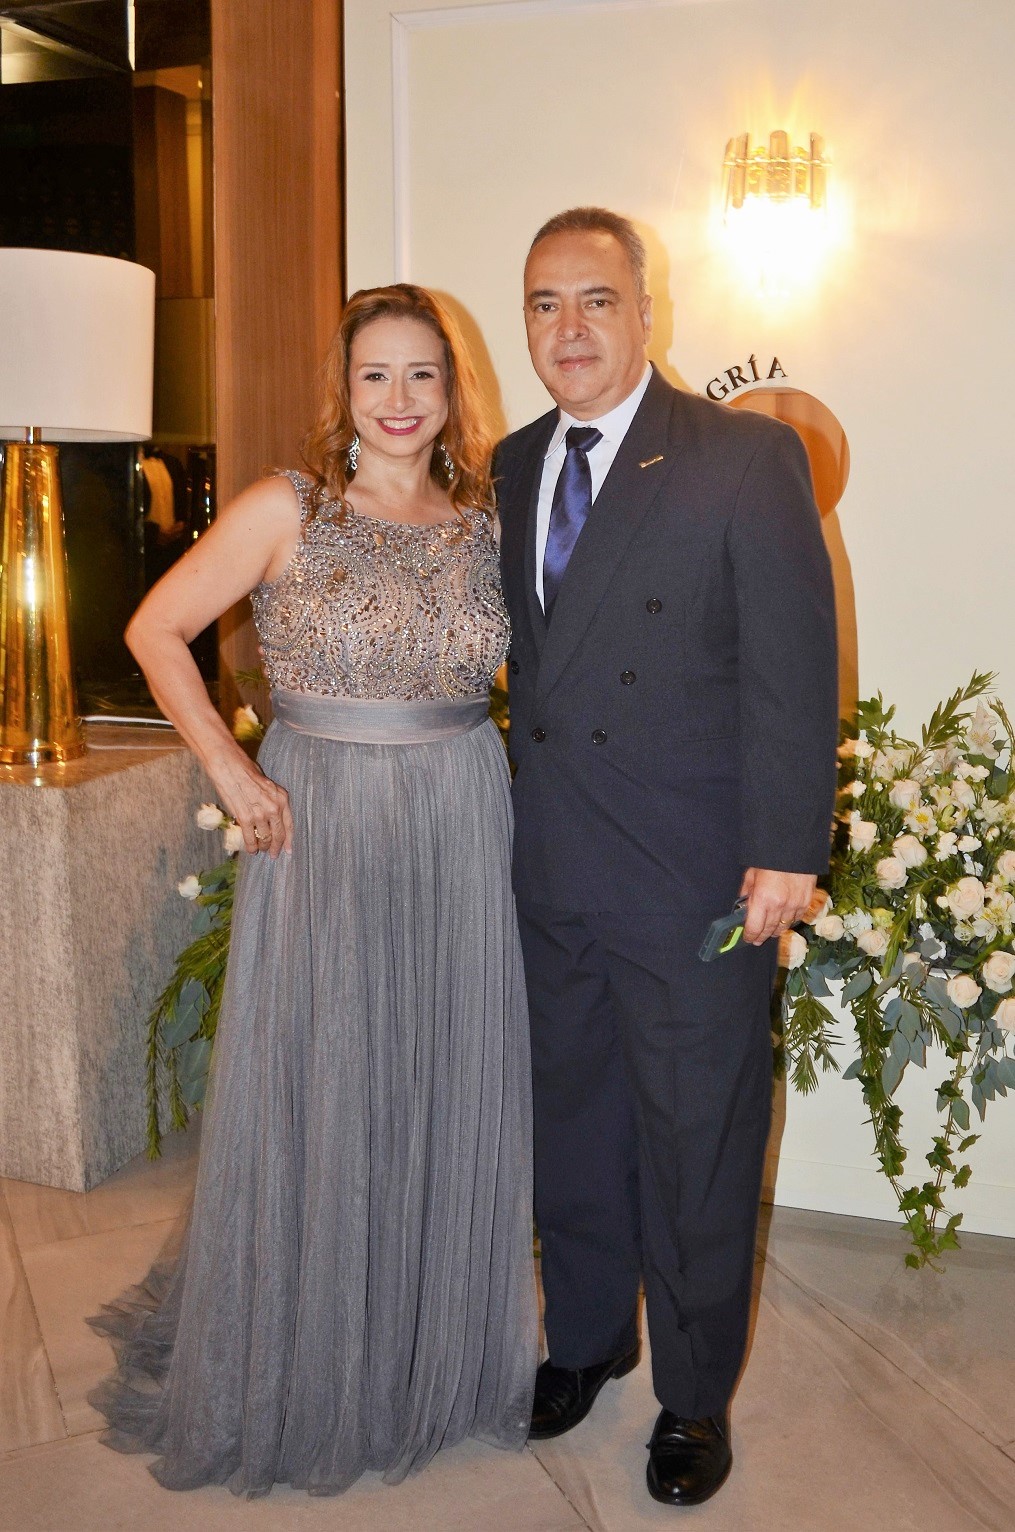 Múltiples felicitaciones para los nuevos esposos Rigoberto Bardales y Ruby Rodríguez 